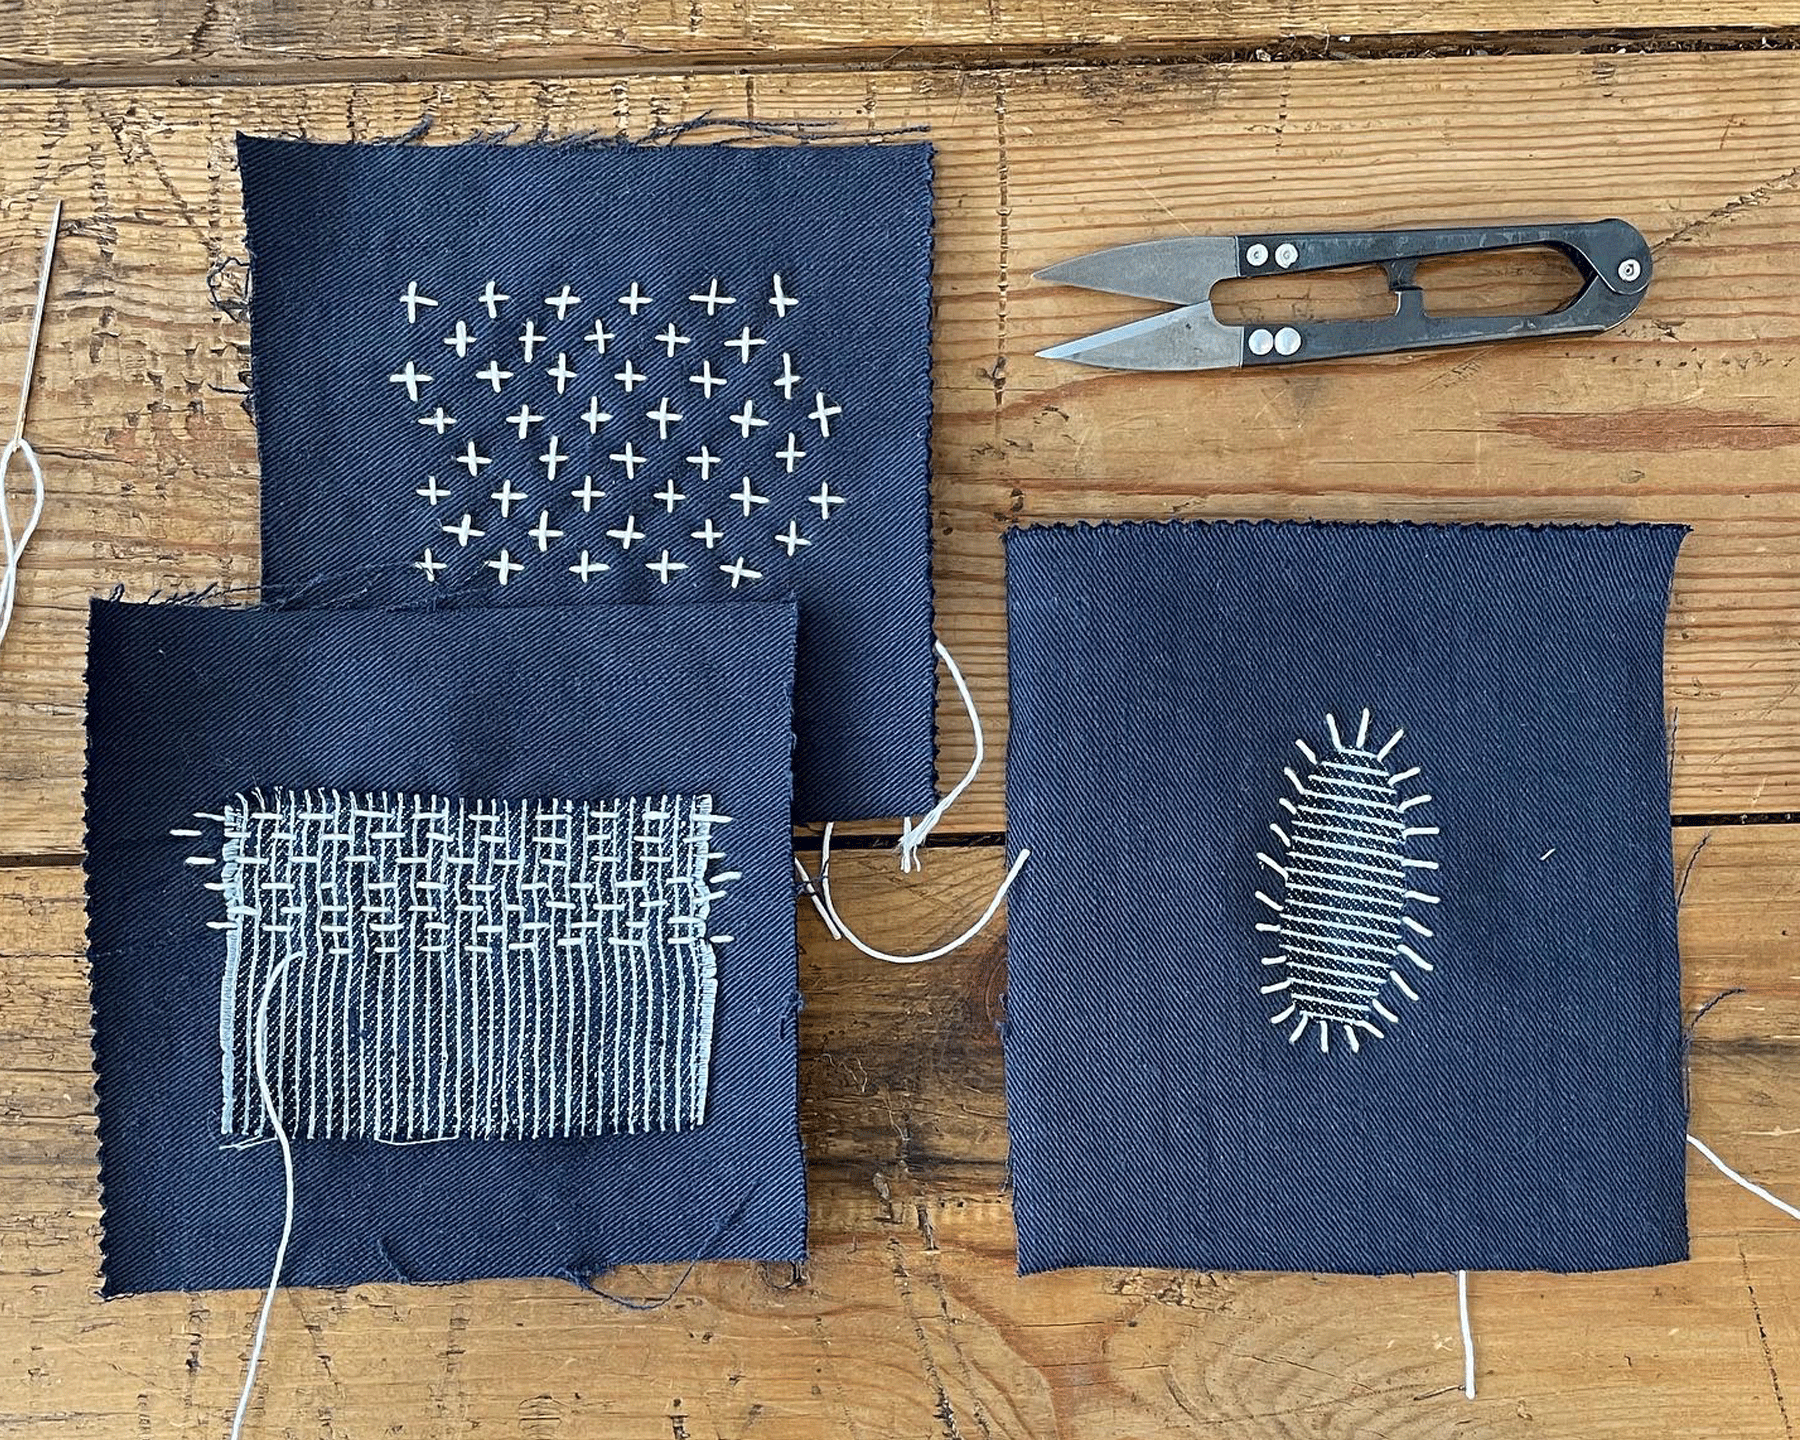 Slow stitching all afternoon 😎 #slowstitching #sashiko #borostyle  #textilesart #textiles